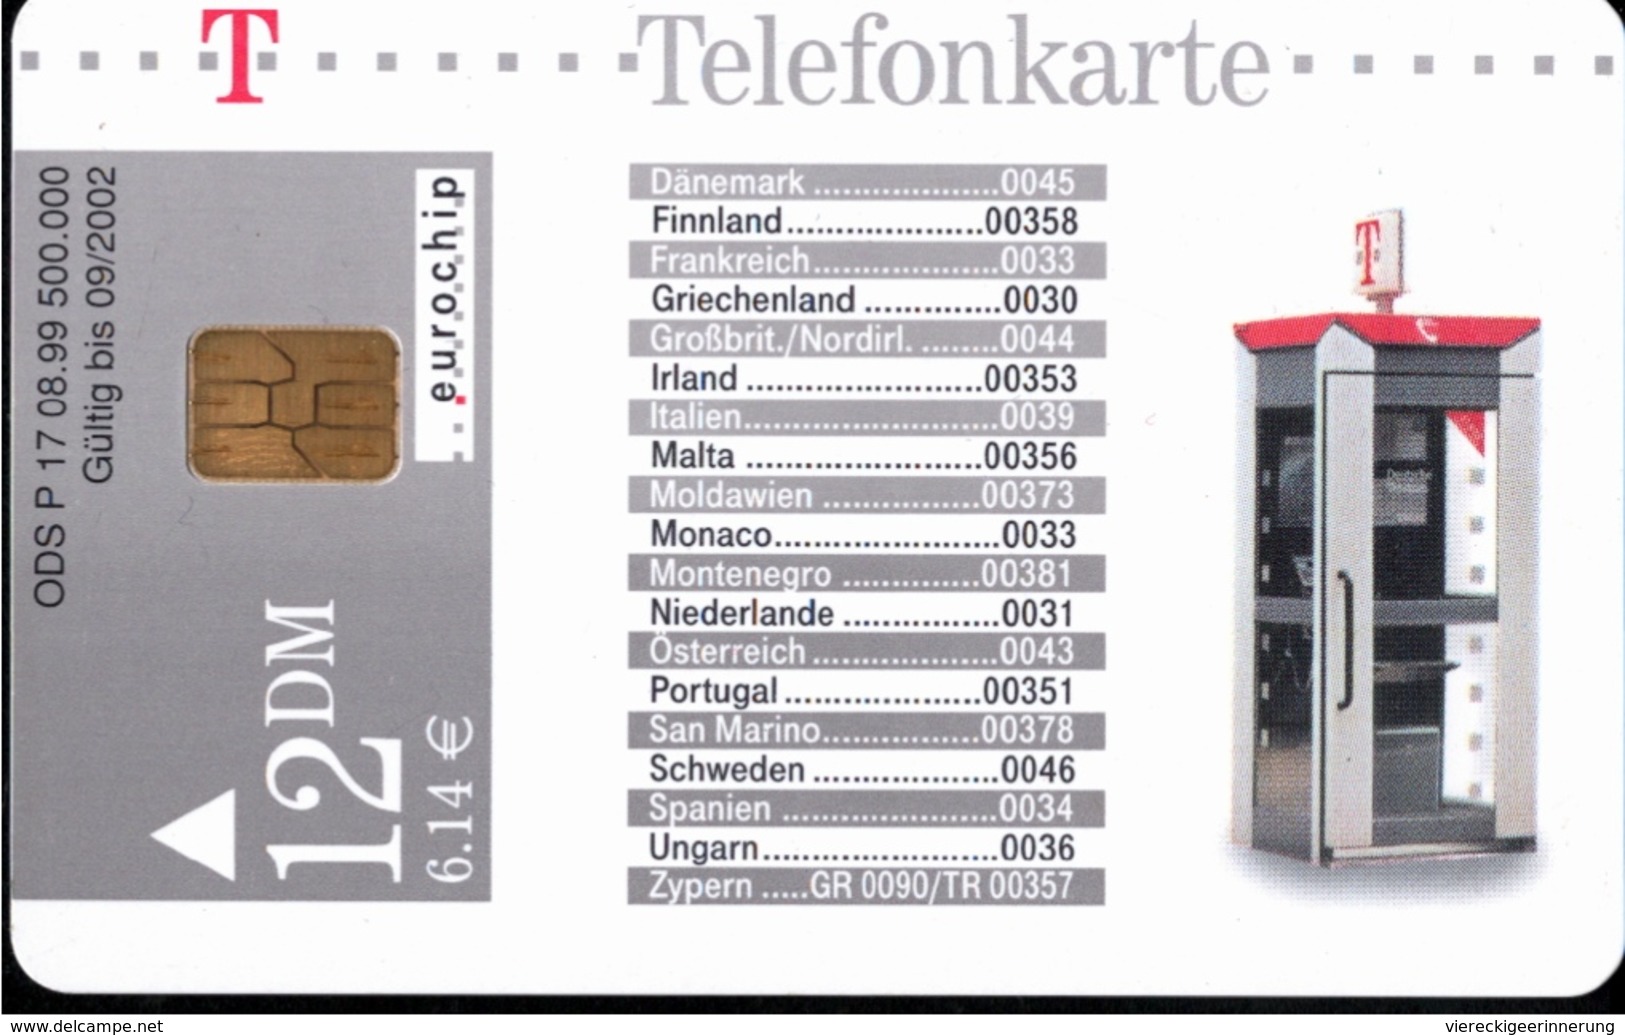 ! Telefonkarte, Telecarte, Phonecard, 1999, P17, Auflage 500000, Telekom Telefonhäuschen, Germany - P & PD-Series: Schalterkarten Der Dt. Telekom